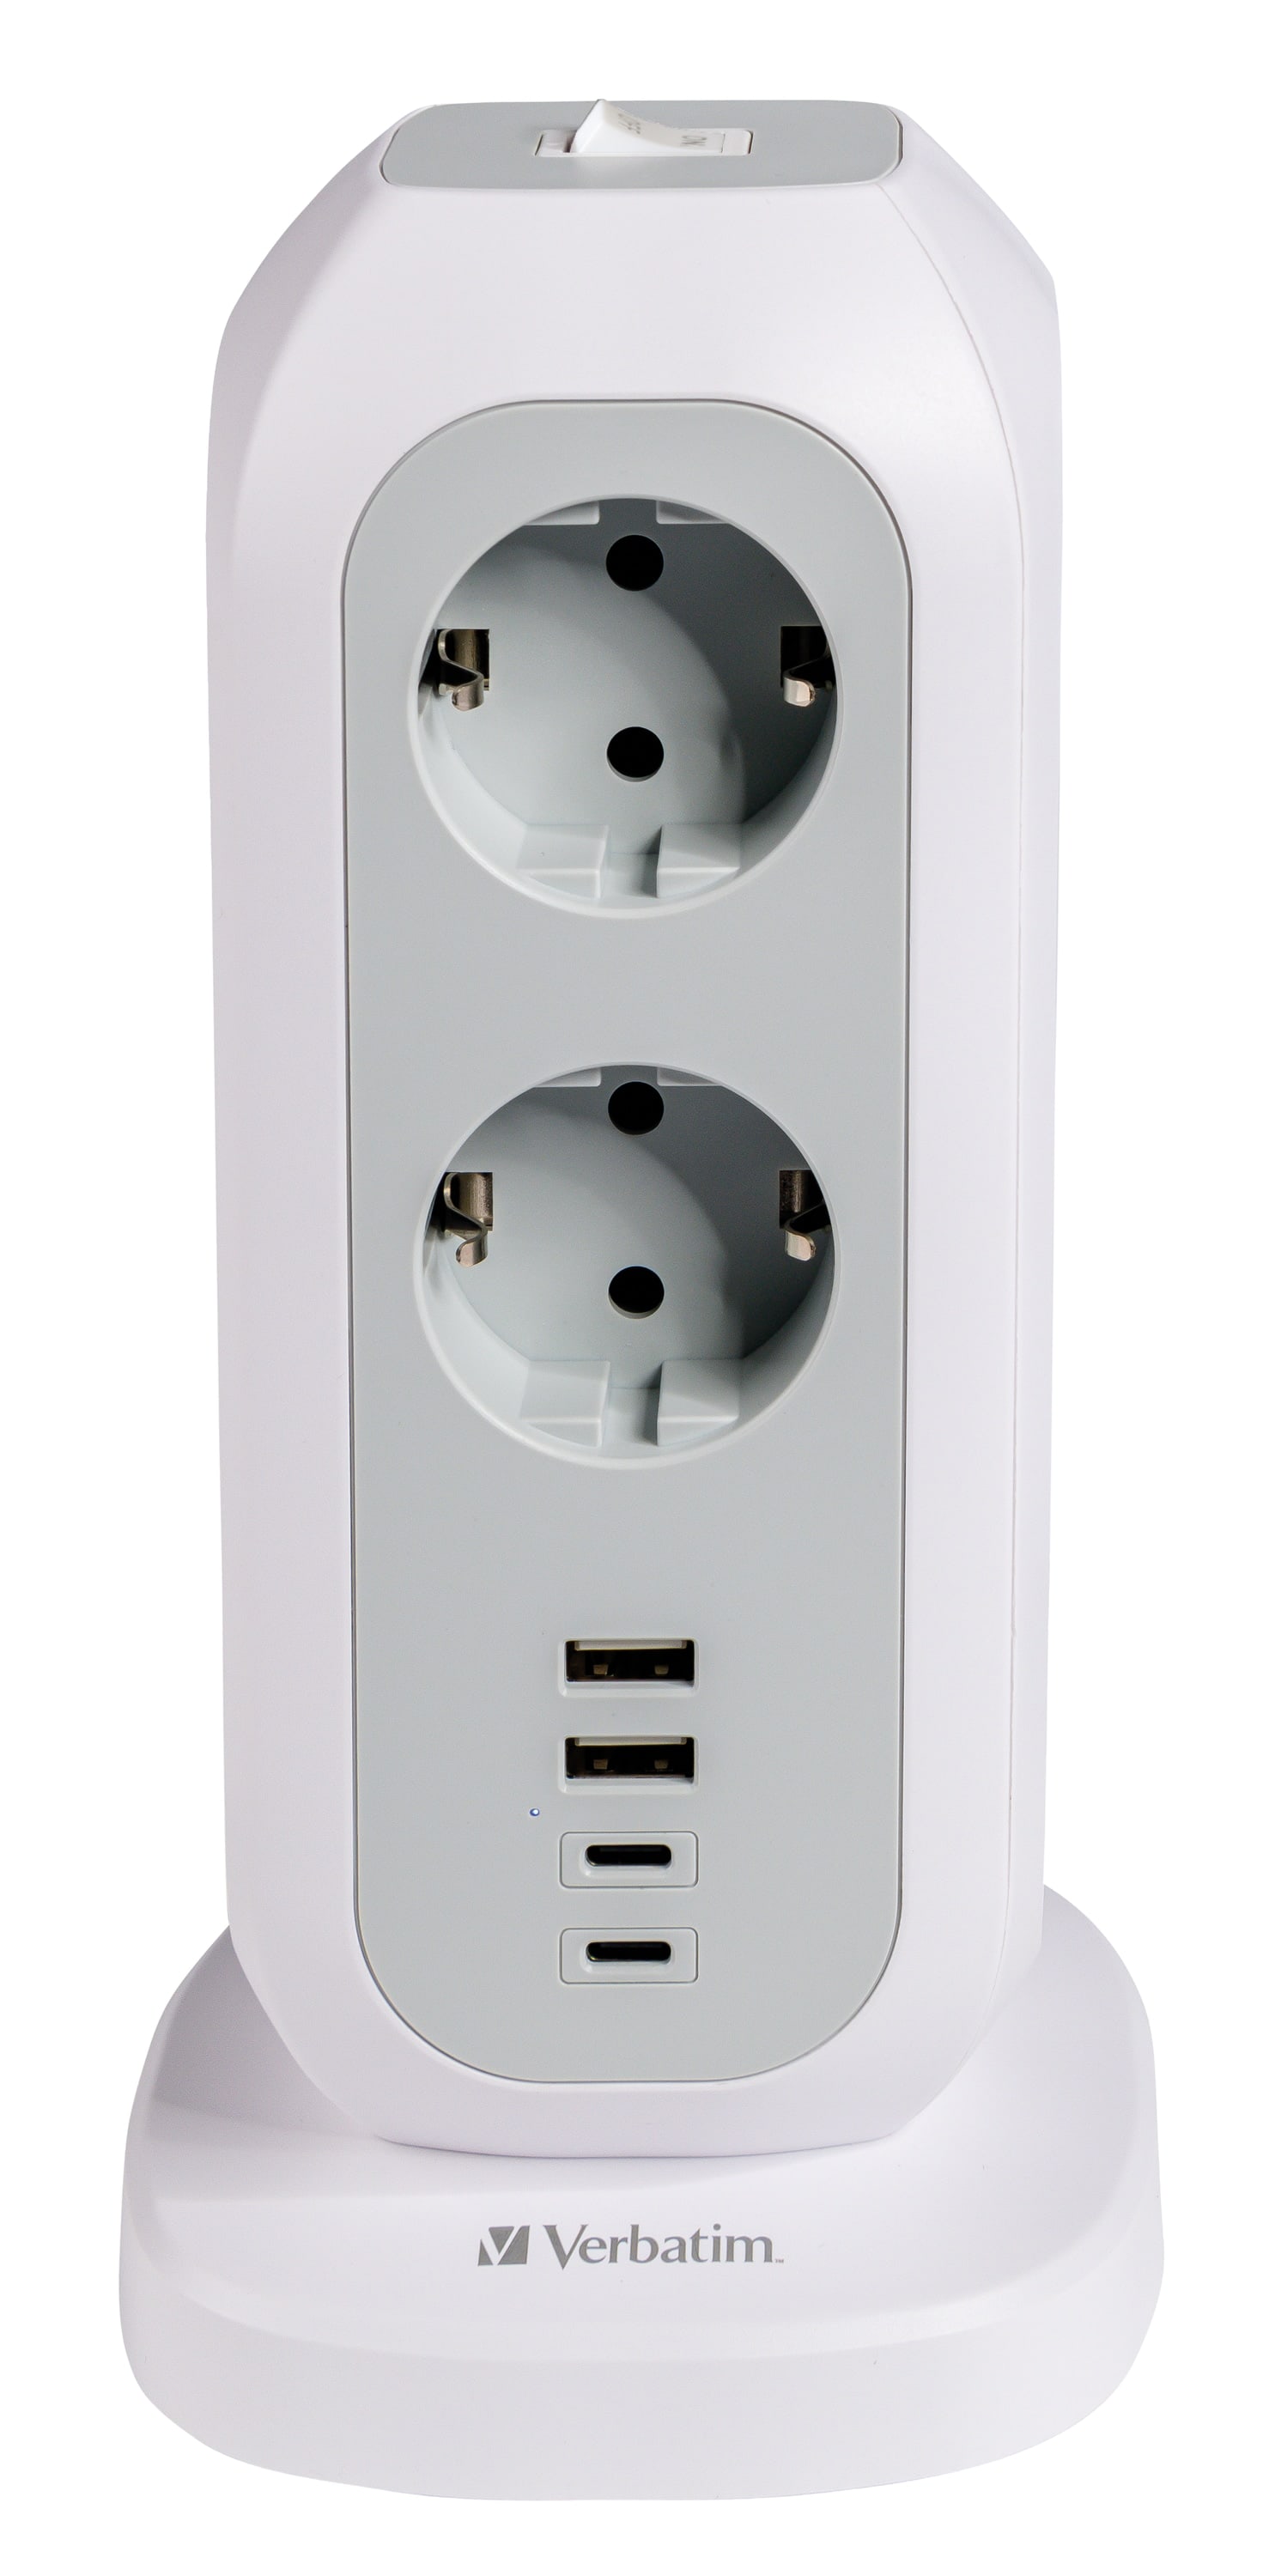 VERBATIM Steckdosenverteiler EUPT-01, Tower, 11-fach, 2x USB-A, 2x USB-C